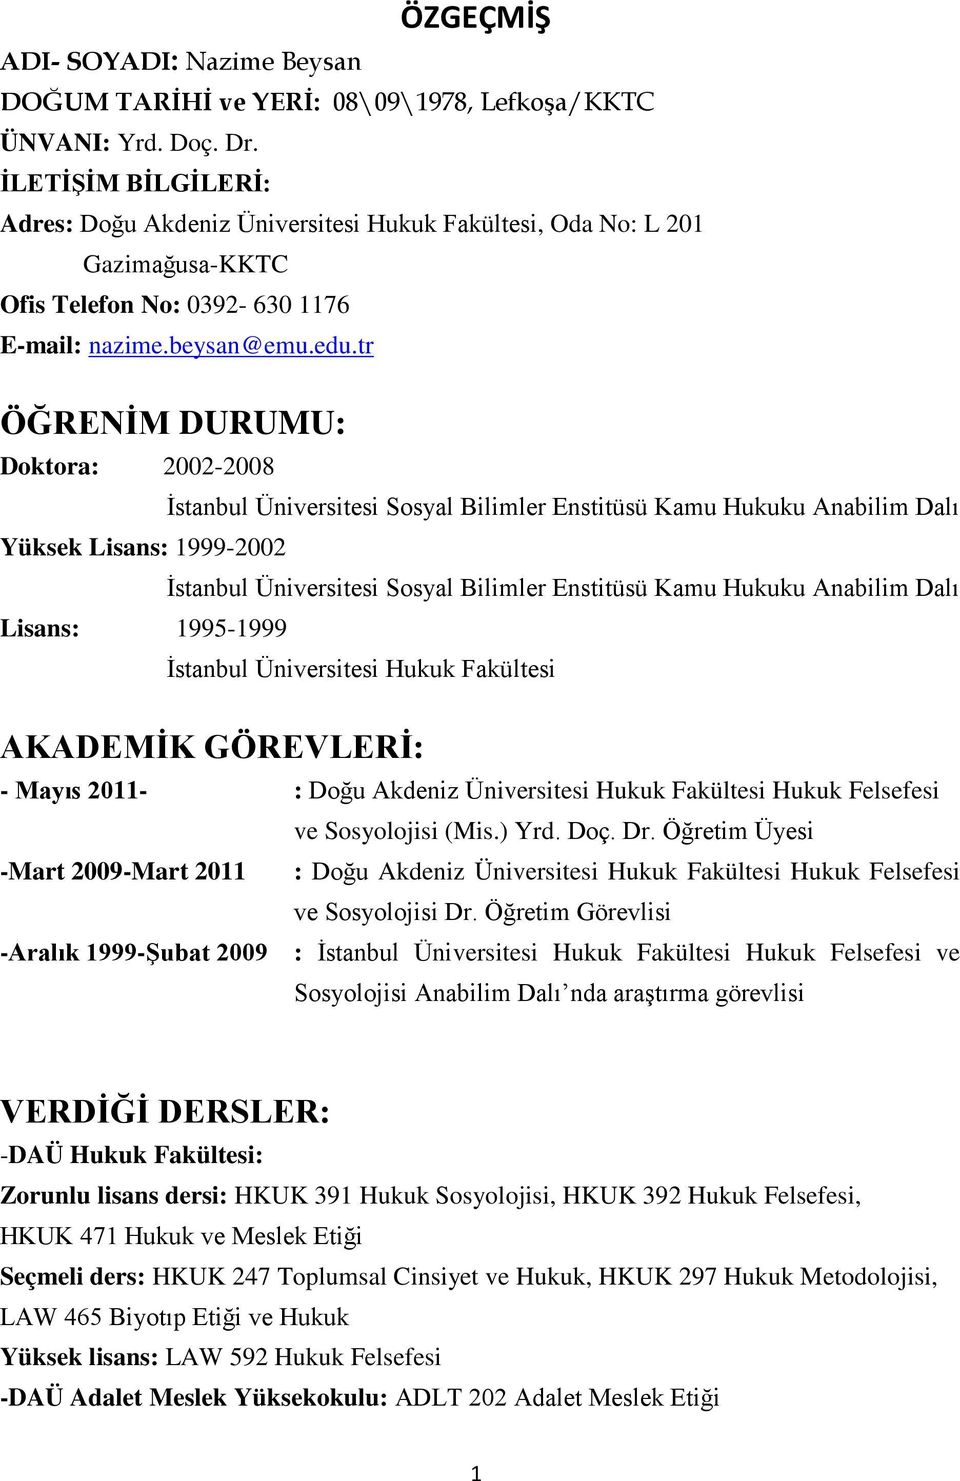 tr ÖĞRENİM DURUMU: Doktora: 2002-2008 İstanbul Üniversitesi Sosyal Bilimler Enstitüsü Kamu Hukuku Anabilim Dalı Yüksek Lisans: 1999-2002 İstanbul Üniversitesi Sosyal Bilimler Enstitüsü Kamu Hukuku